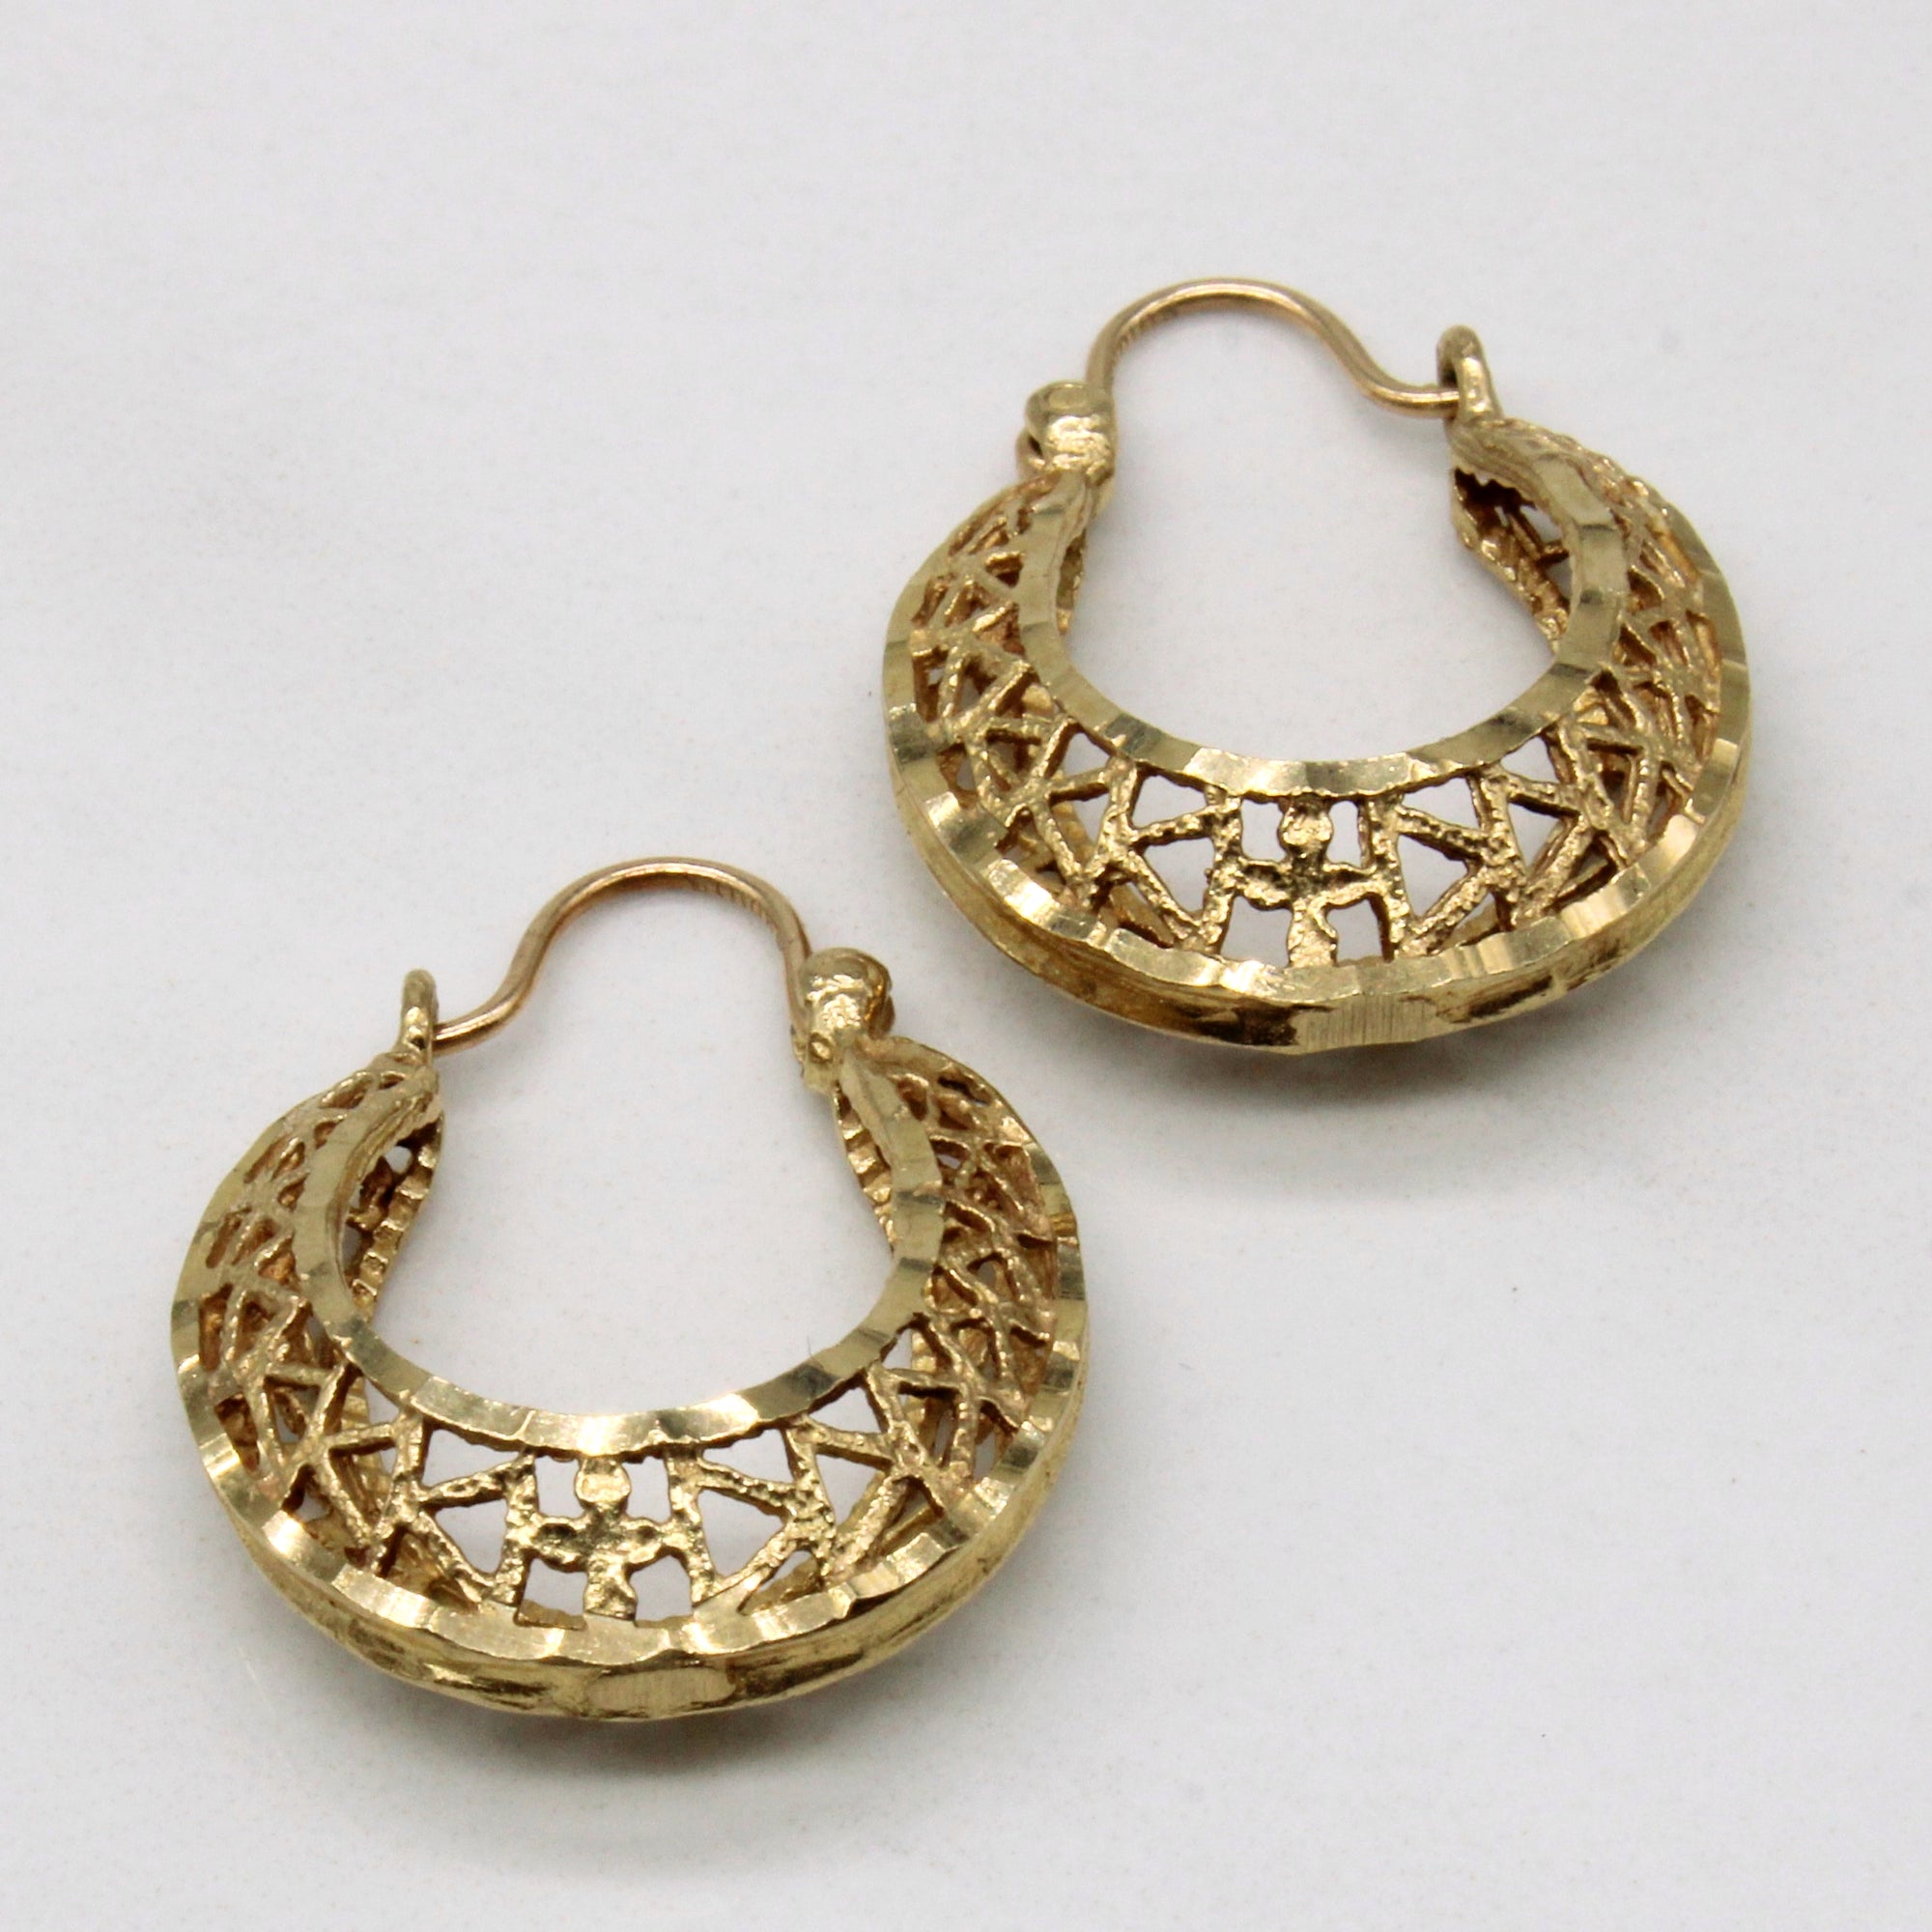 10k Yellow Gold Earrings